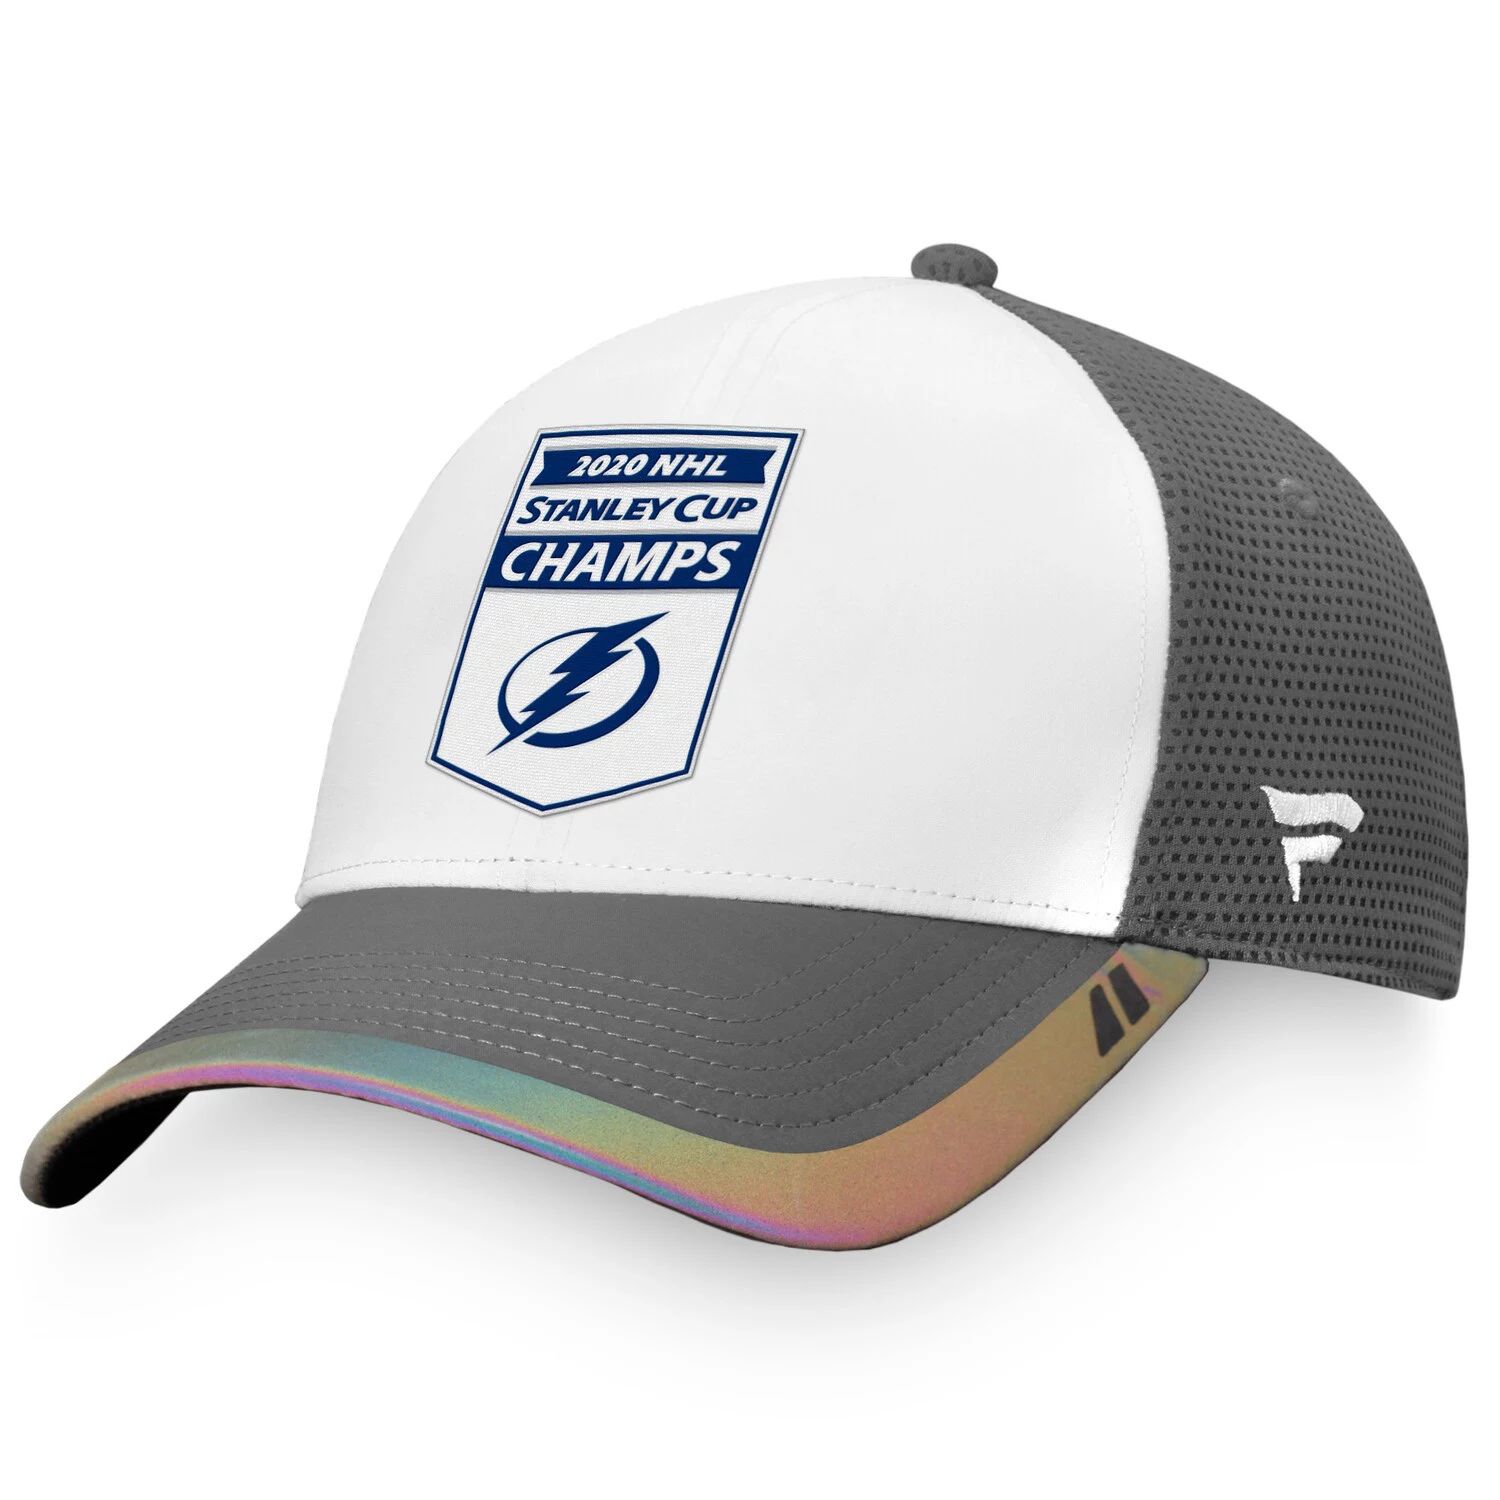 цена Мужская фирменная белая/серая бейсболка Fanatics Tampa Bay Lightning 2020 с баннером Кубка Стэнли НХЛ Snapback